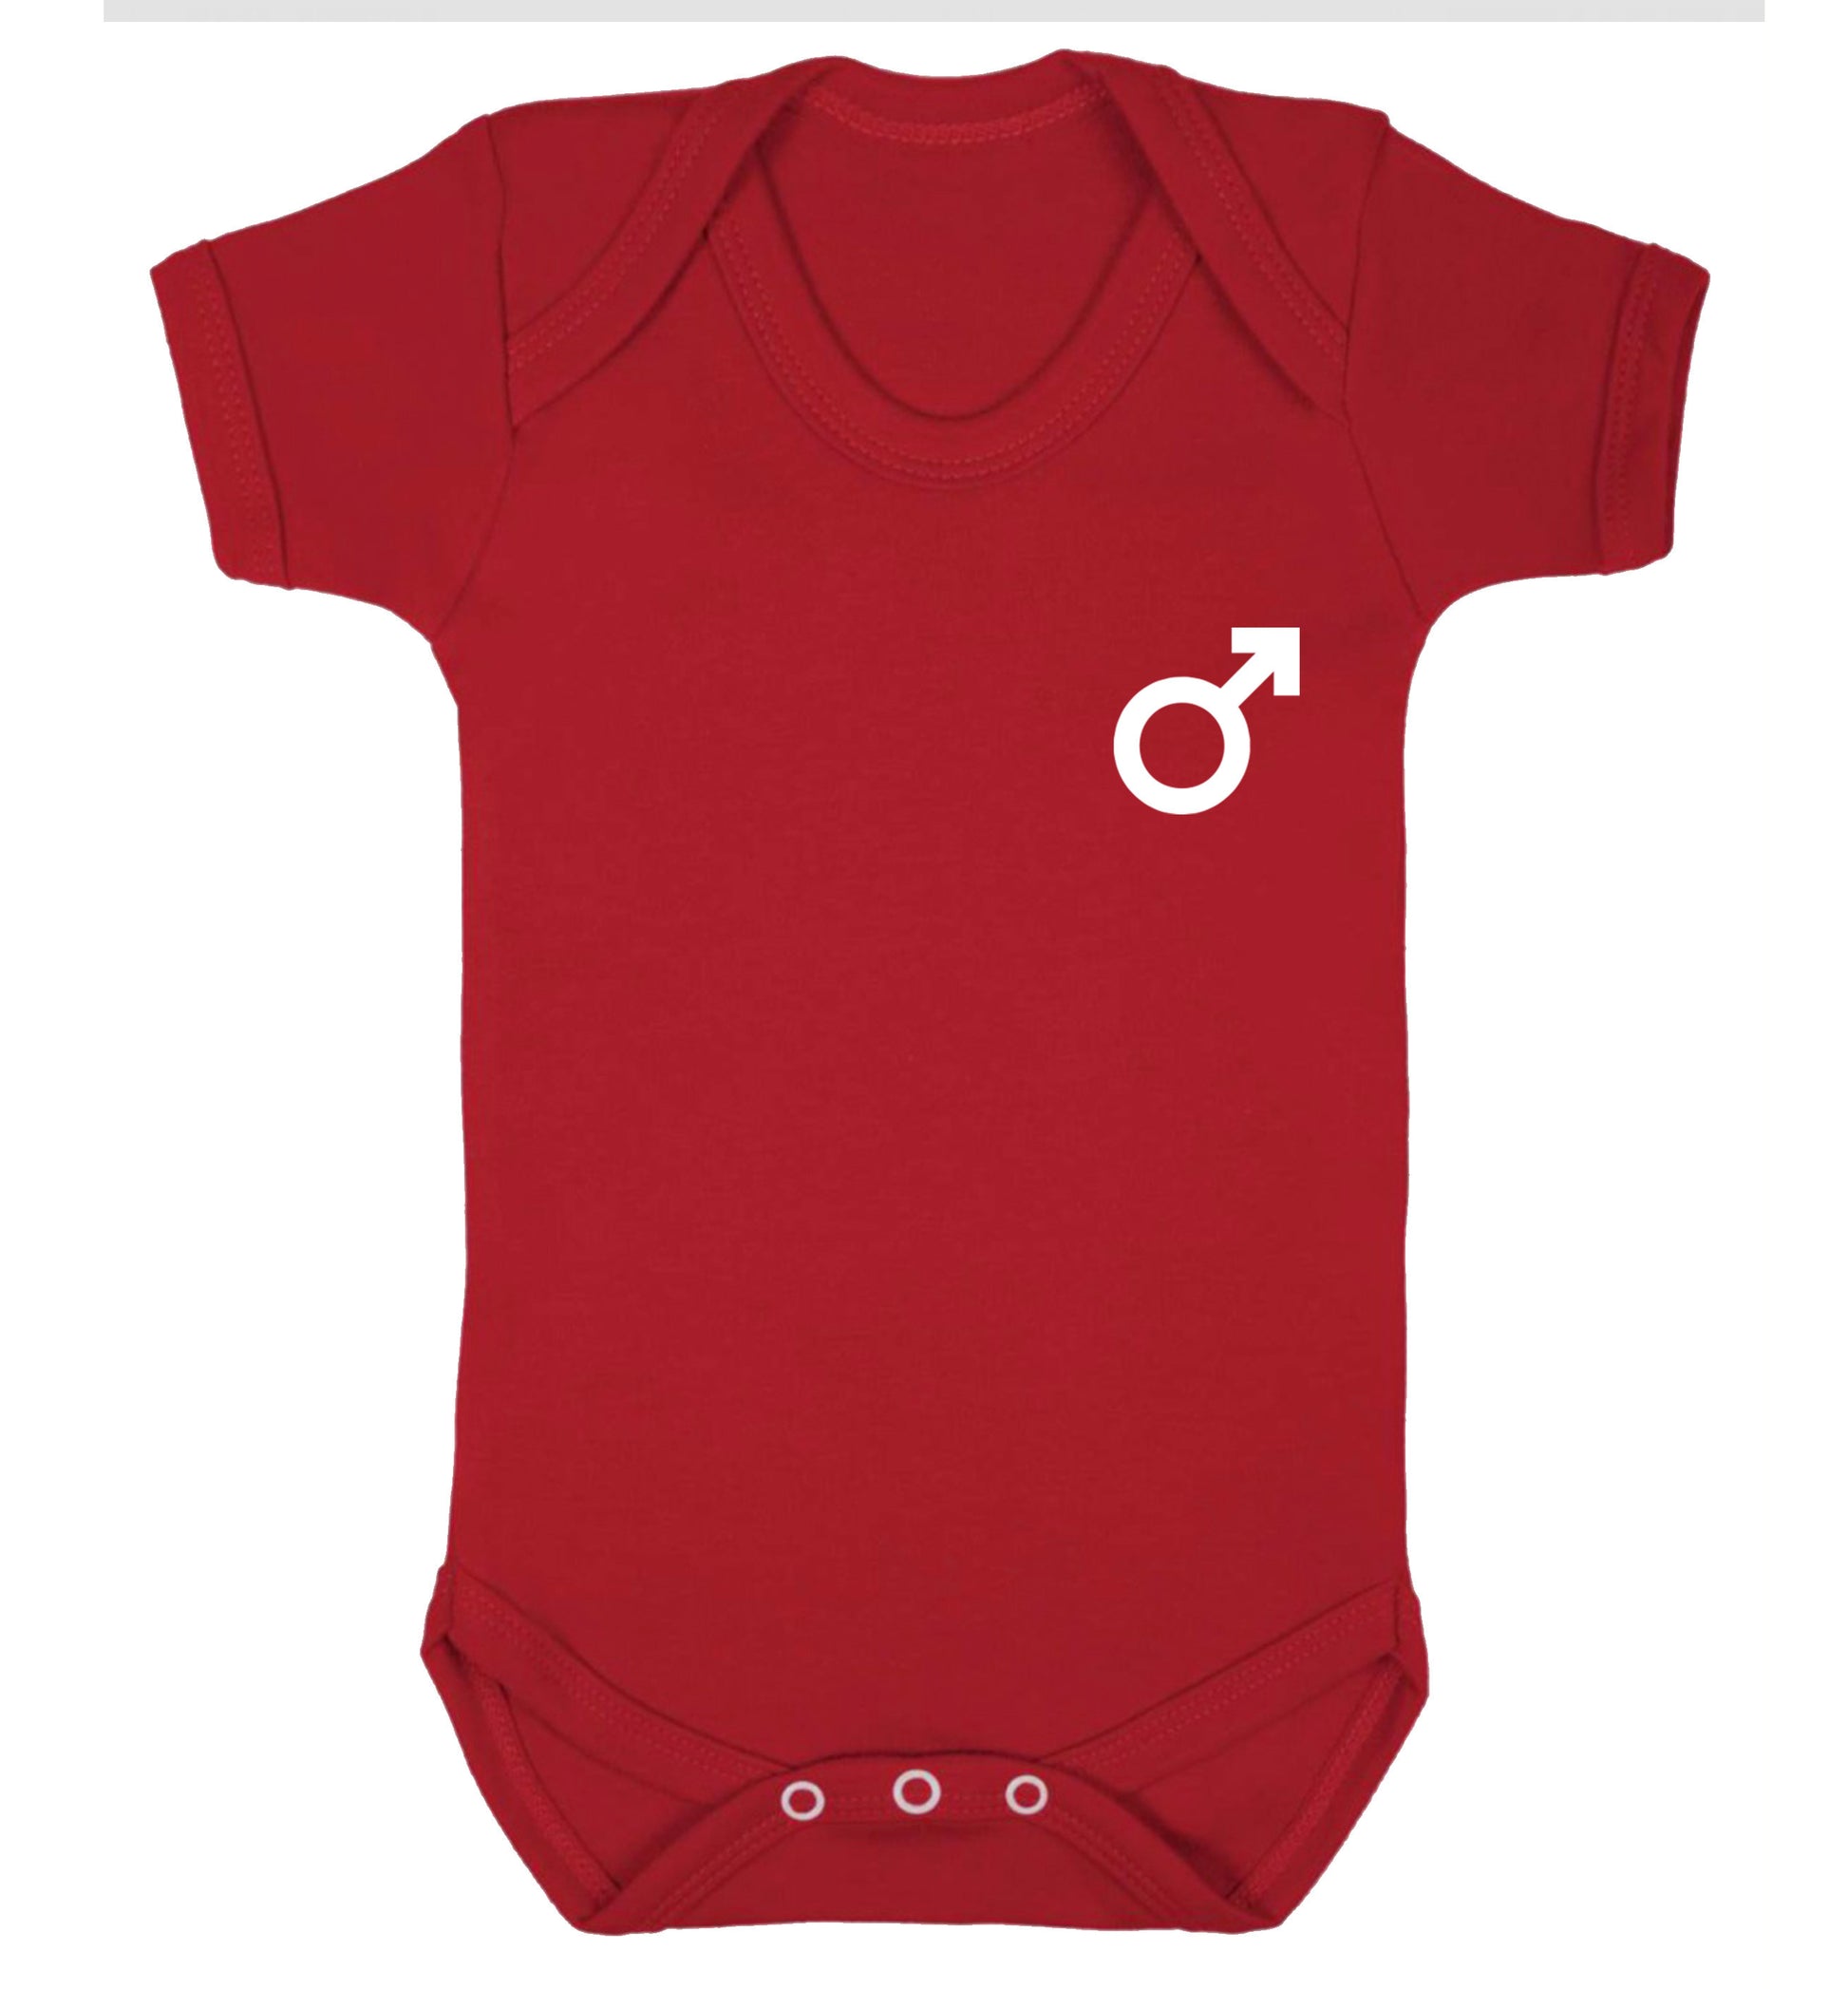 Male symbol pocket Baby Vest red 18-24 months